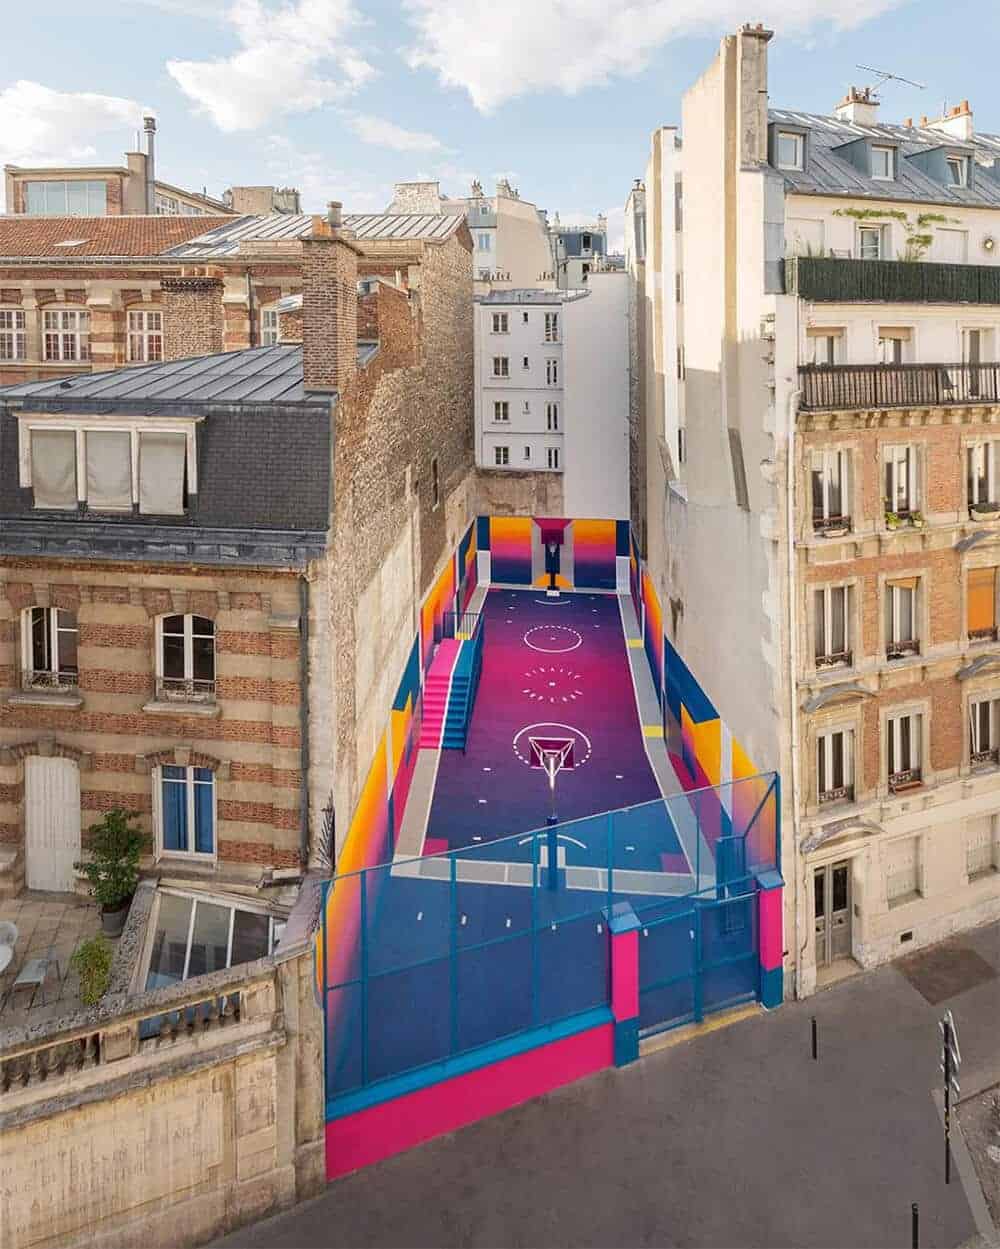 basketbalveld in Parijs